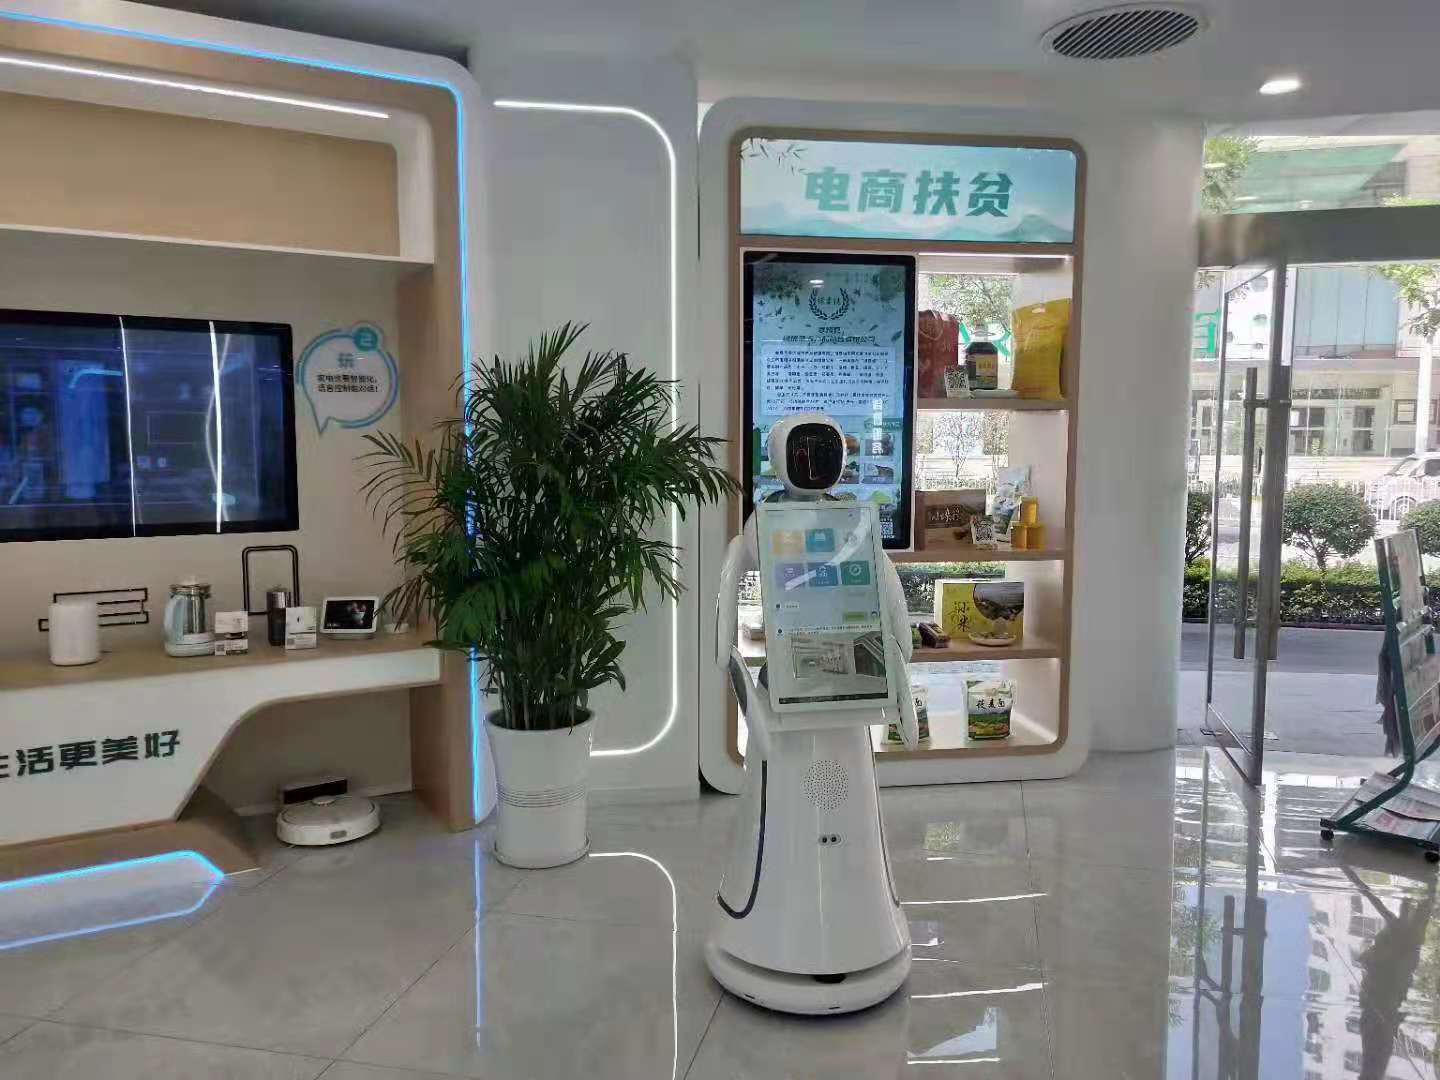 四平博物馆讲解机器人公司